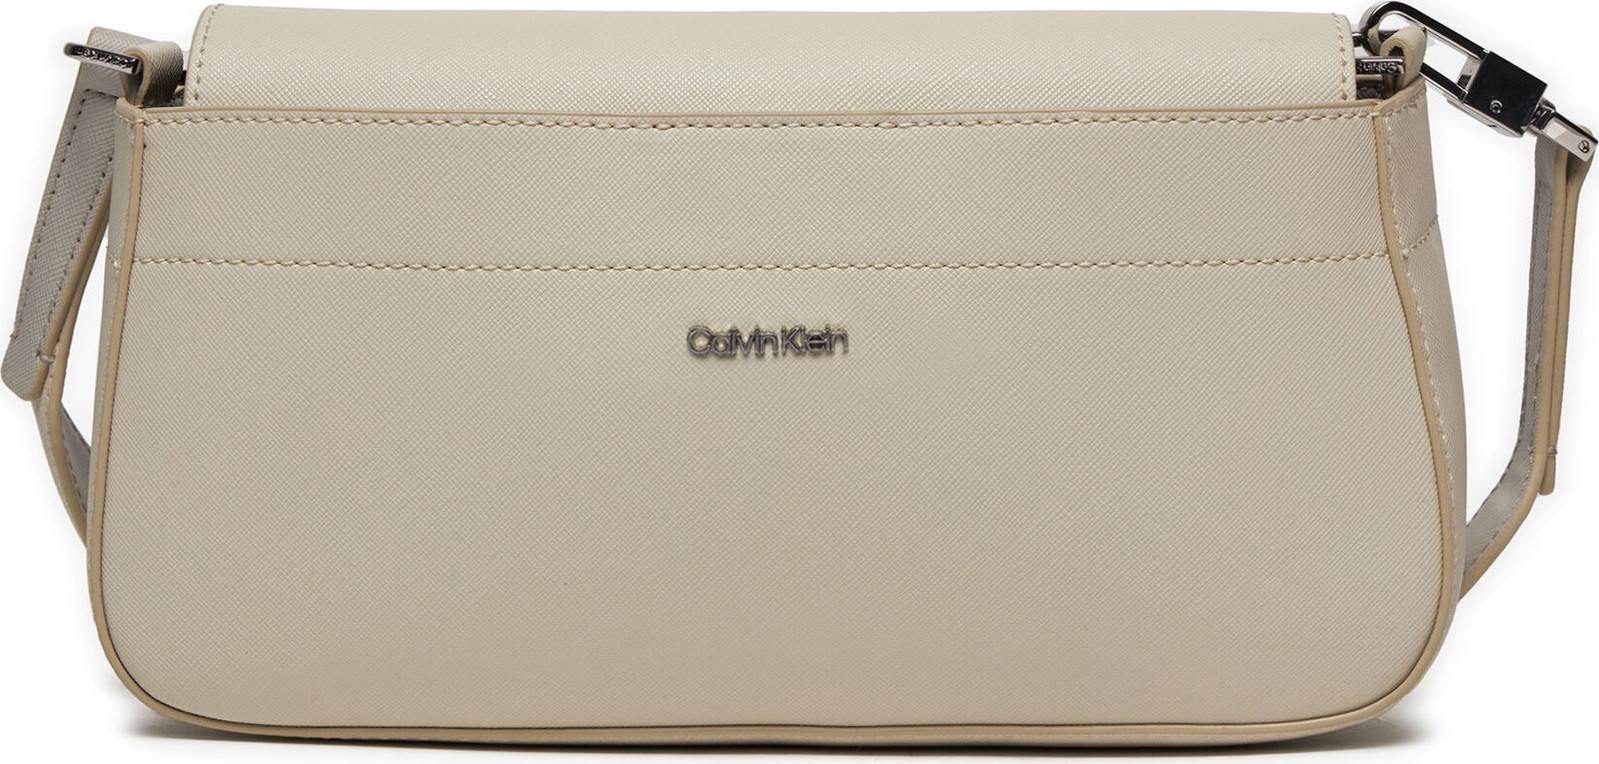 Kabelka Calvin Klein Business Shoulder Bag_Saffiano K60K611680 Dk Ecru/Sand Pebble PC4